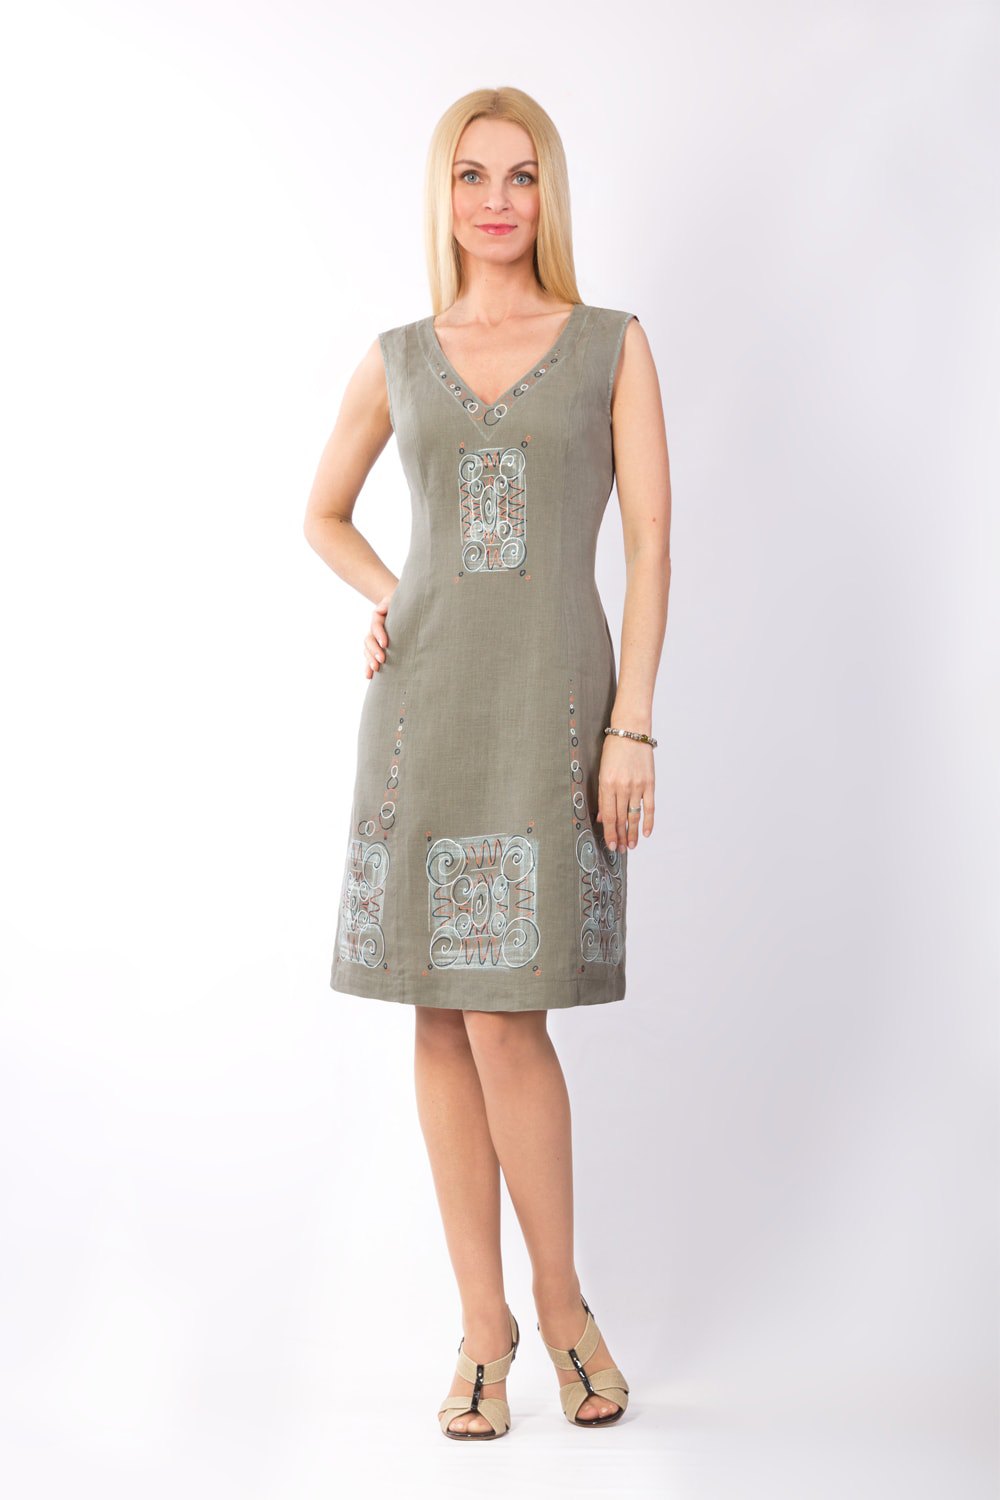 Сарафан женский "Маленькое платье" модель 401/4 хаки